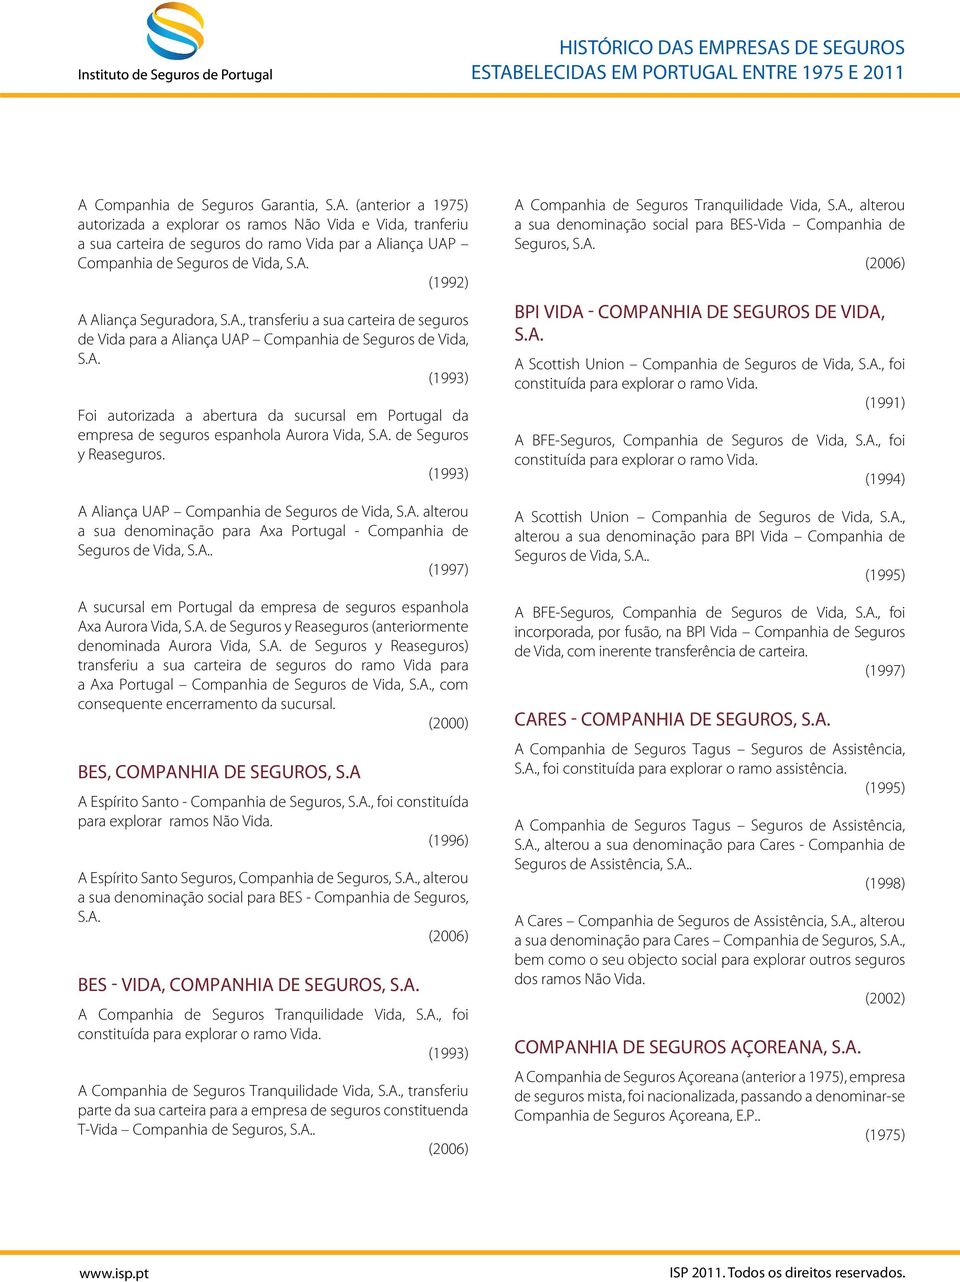 espanhola Aurora Vida, de Seguros y Reaseguros. (1993) A Aliança UAP Companhia de Seguros de Vida, alterou a sua denominação para Axa Portugal - Companhia de Seguros de Vida,.